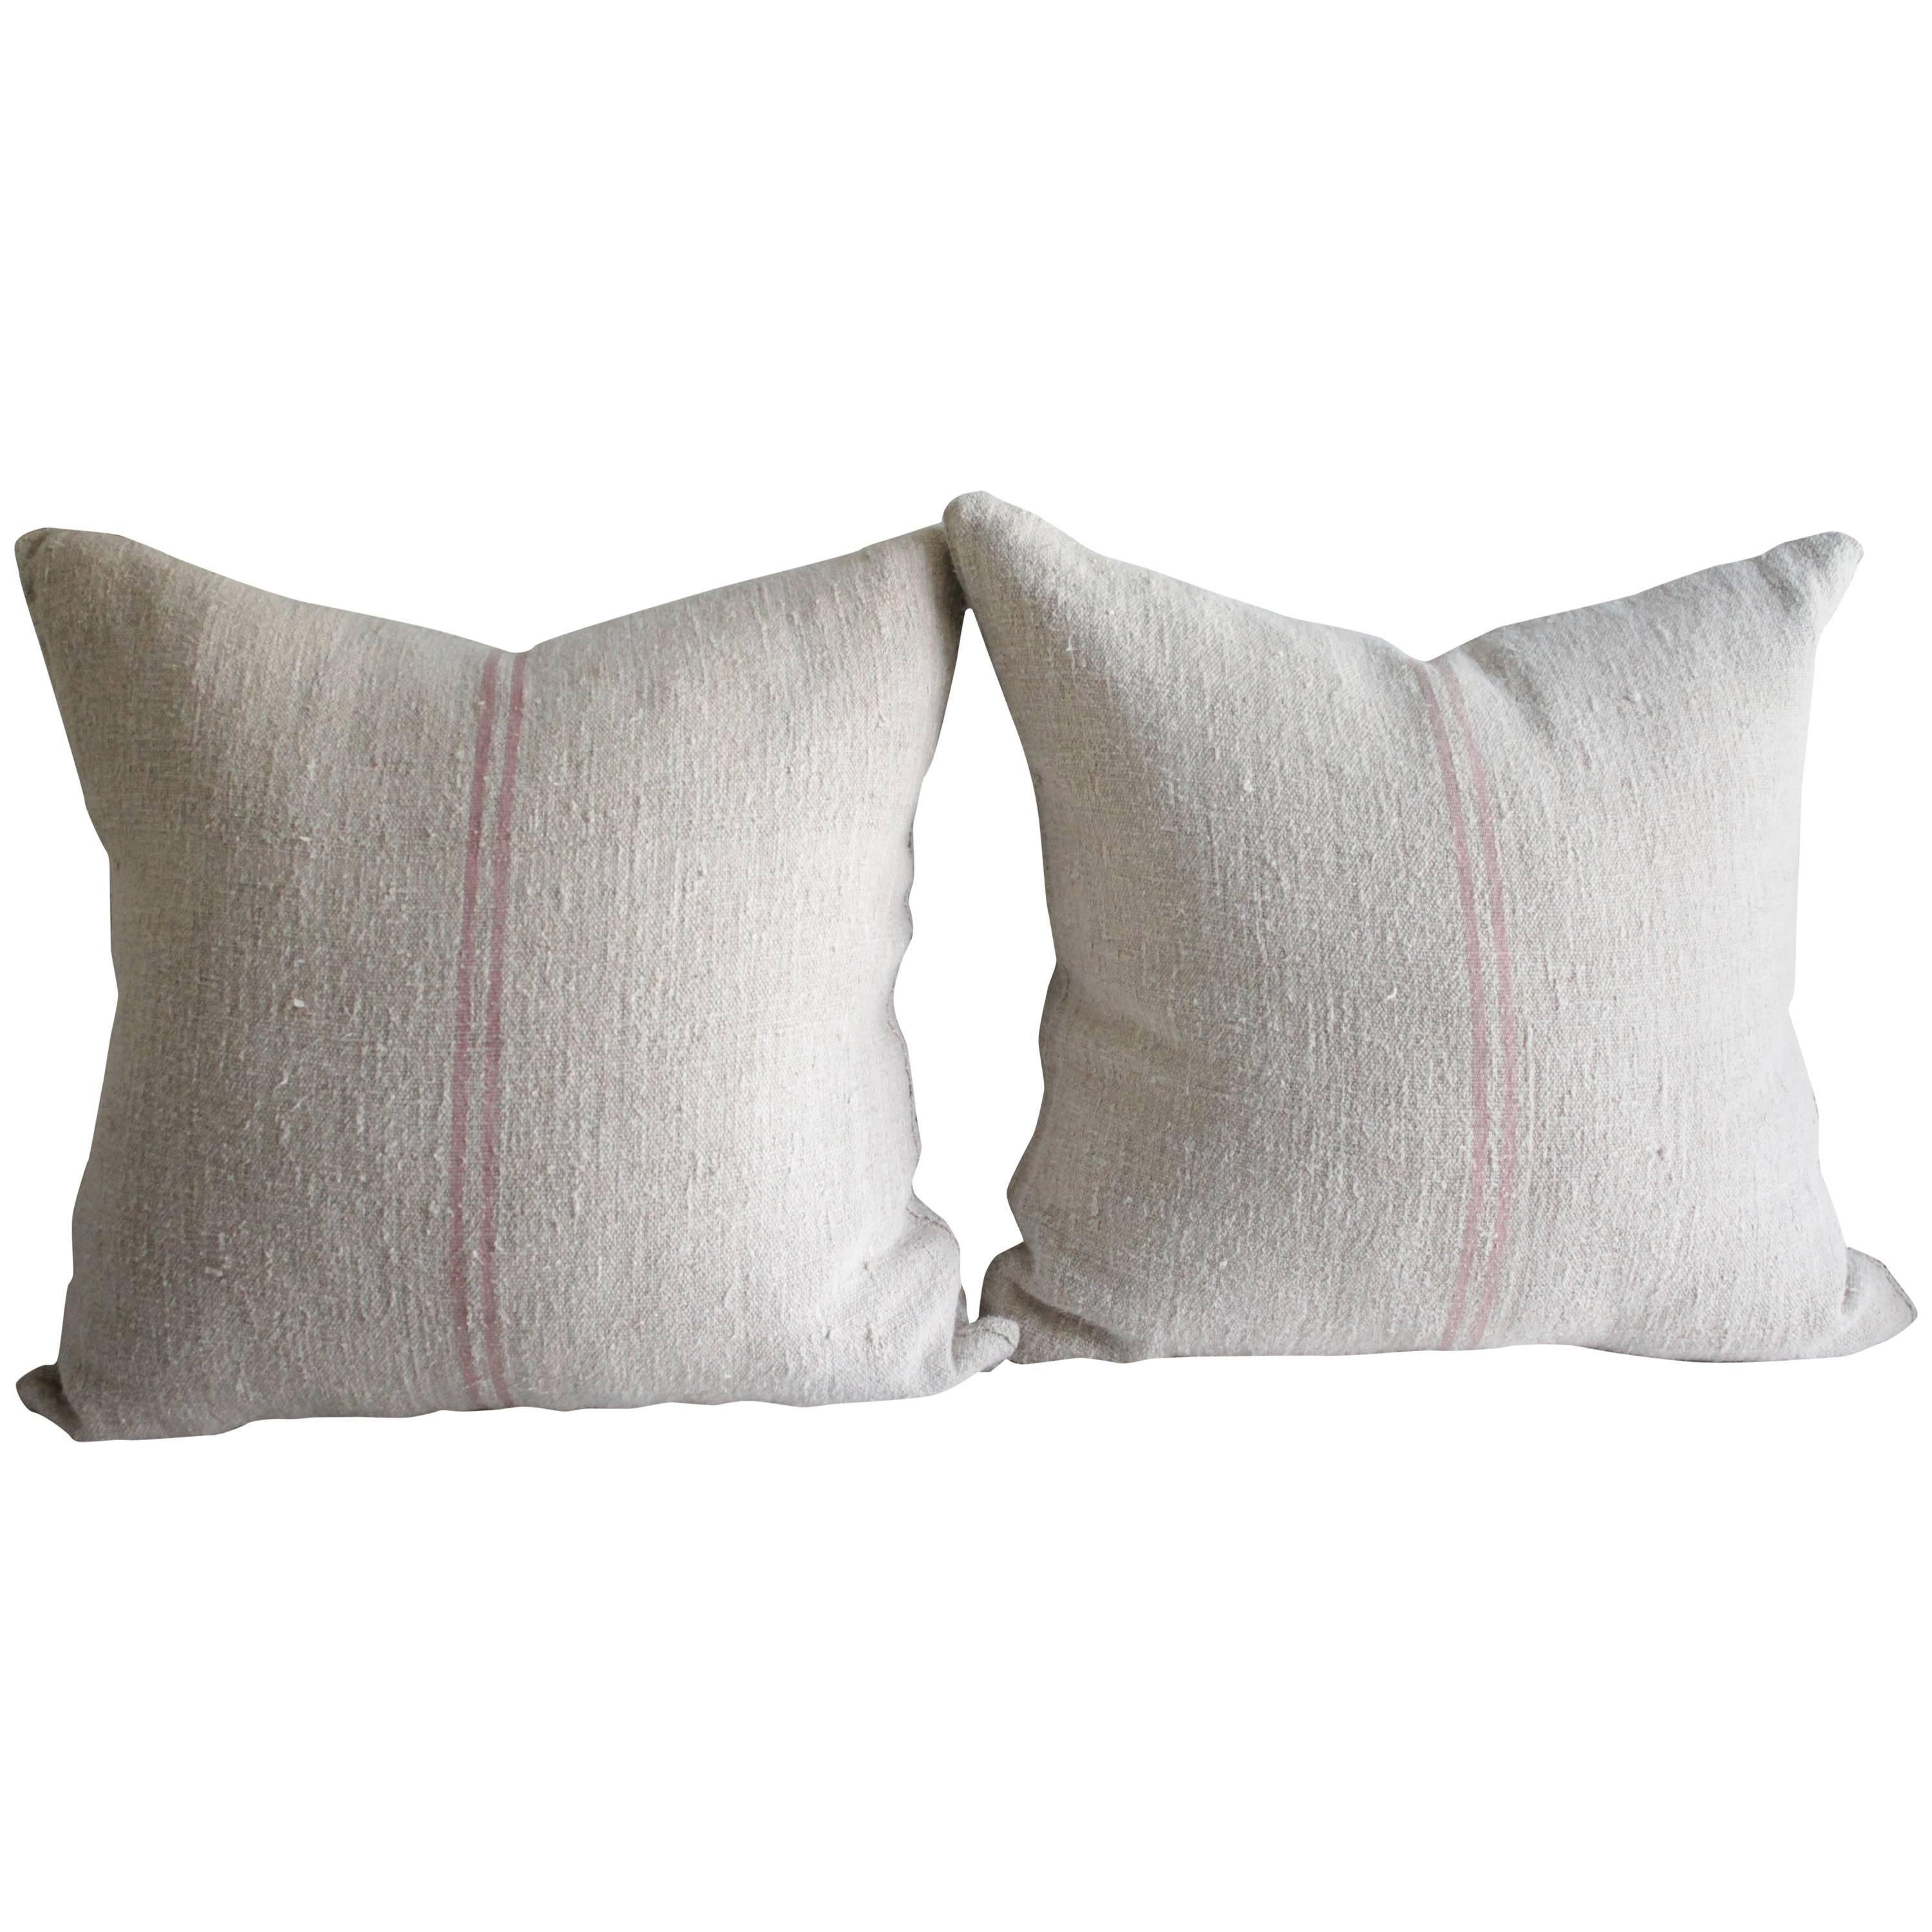 Antique French Grain Sack Linen Pillows 